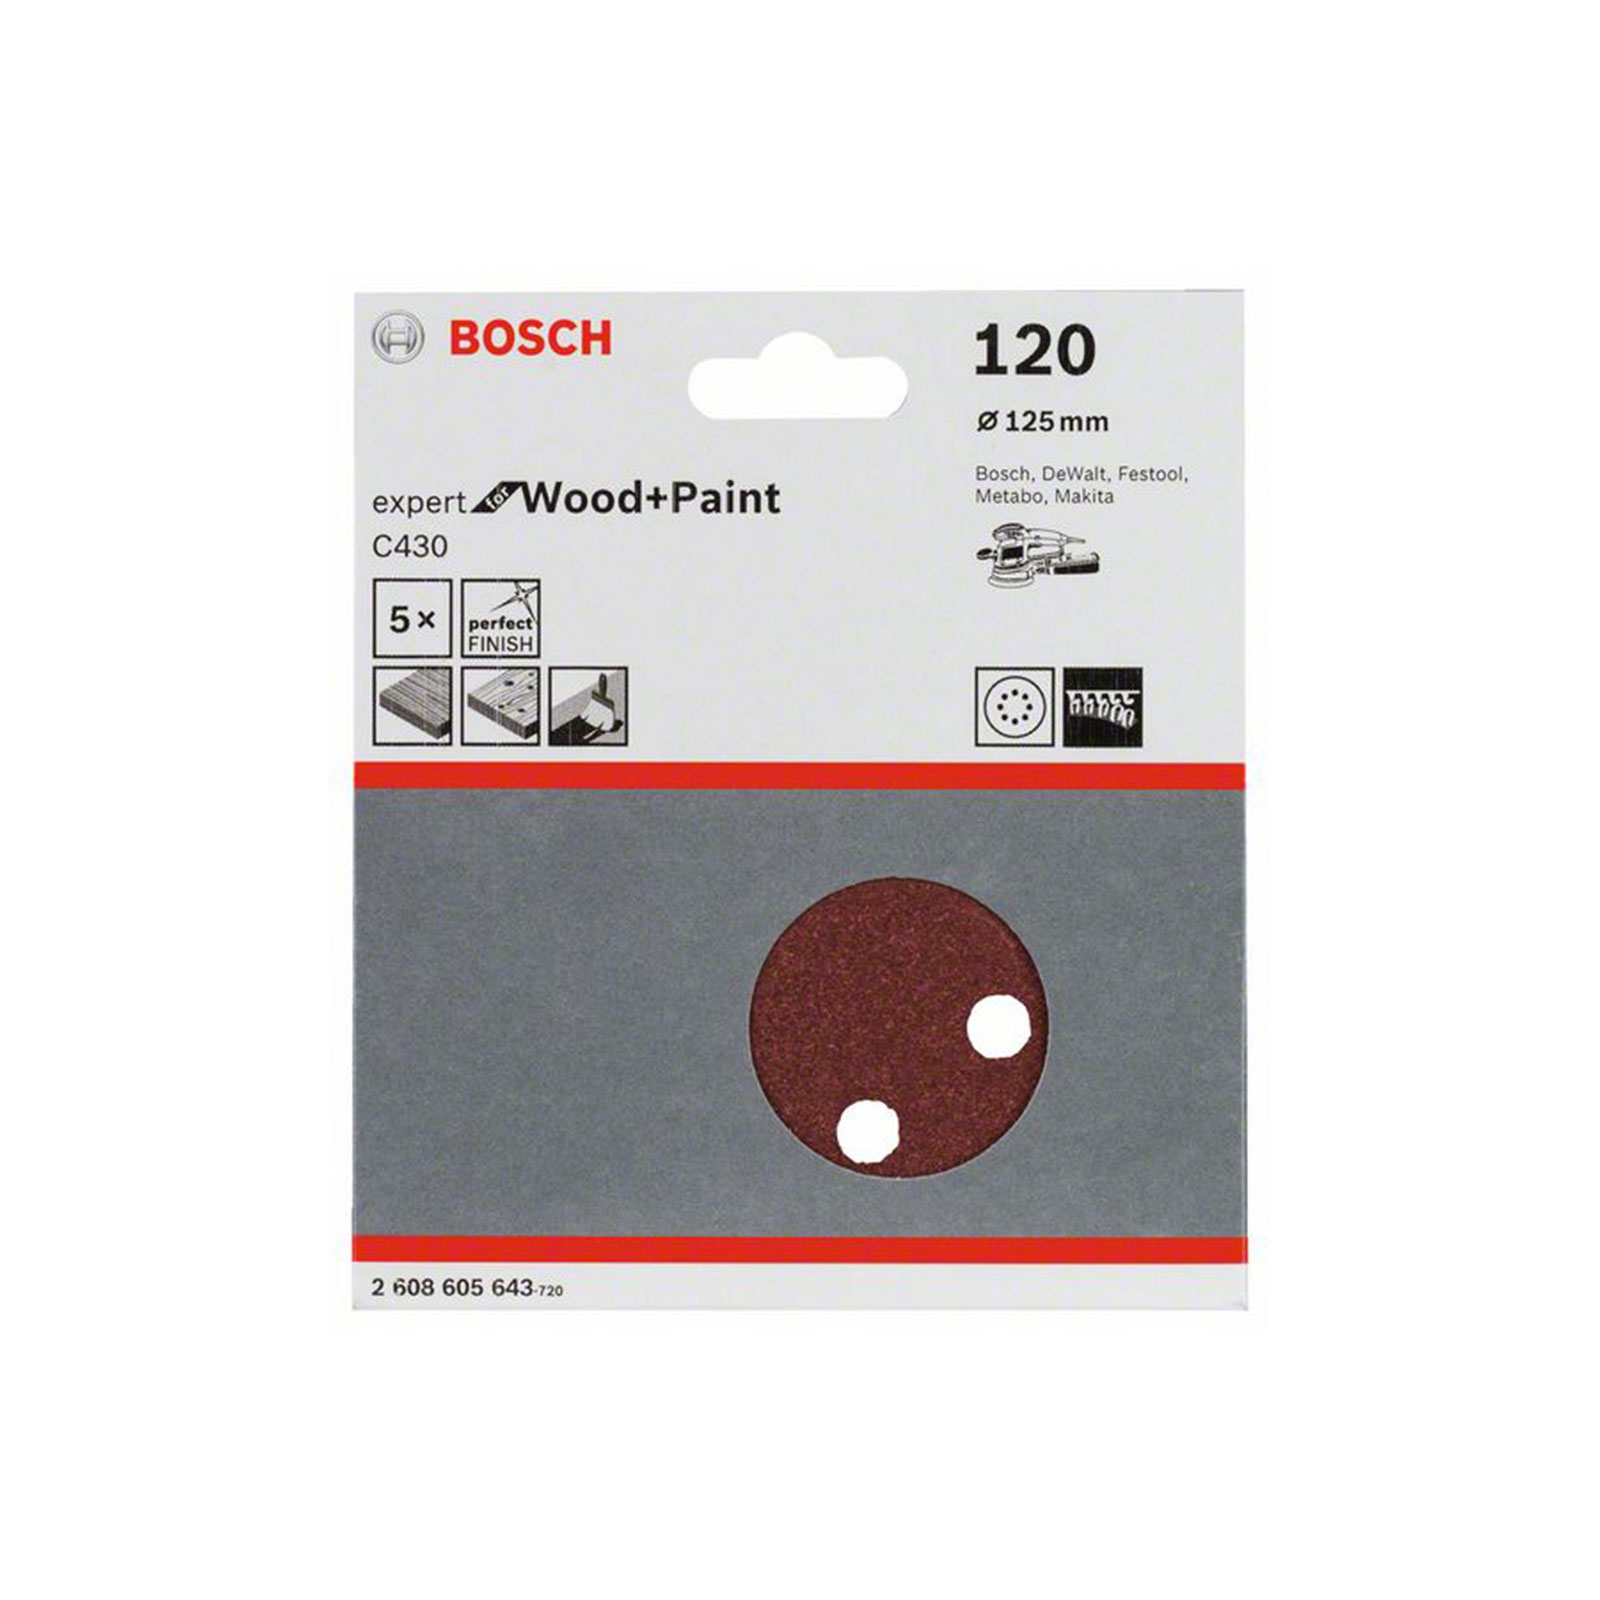 Bosch Professional Schleifblatt C430, 125 mm, 120, 8 Loecher, Klett, 5er-Pack